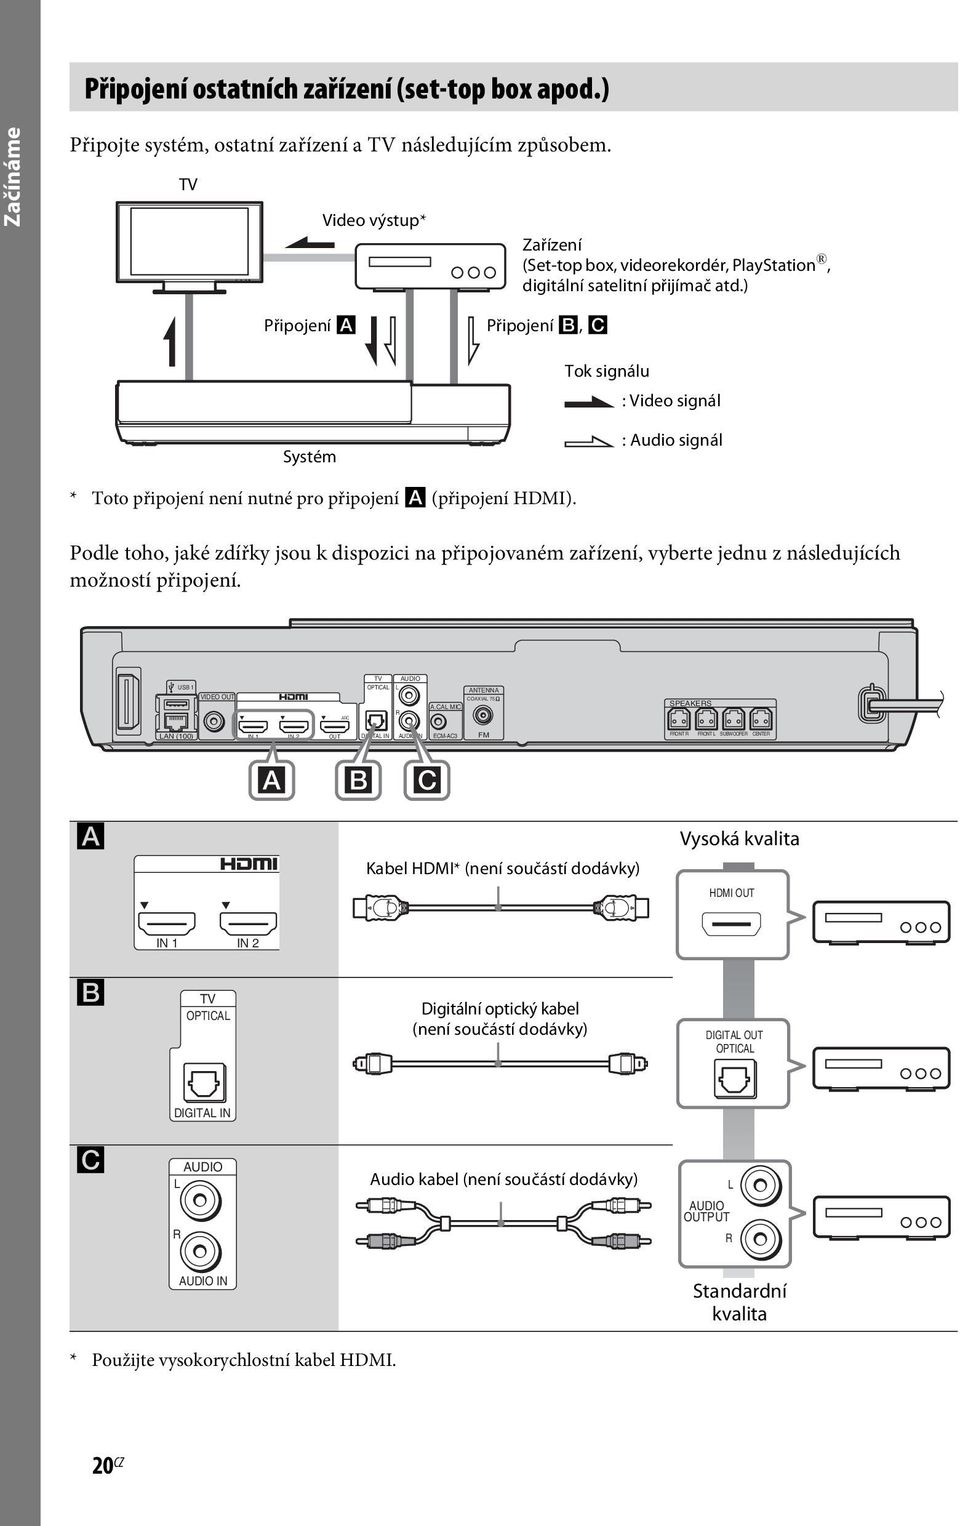 ) Připojení A Připojení B, C Tok signálu : Video signál Systém : Audio signál * Toto připojení není nutné pro připojení A (připojení HDMI).